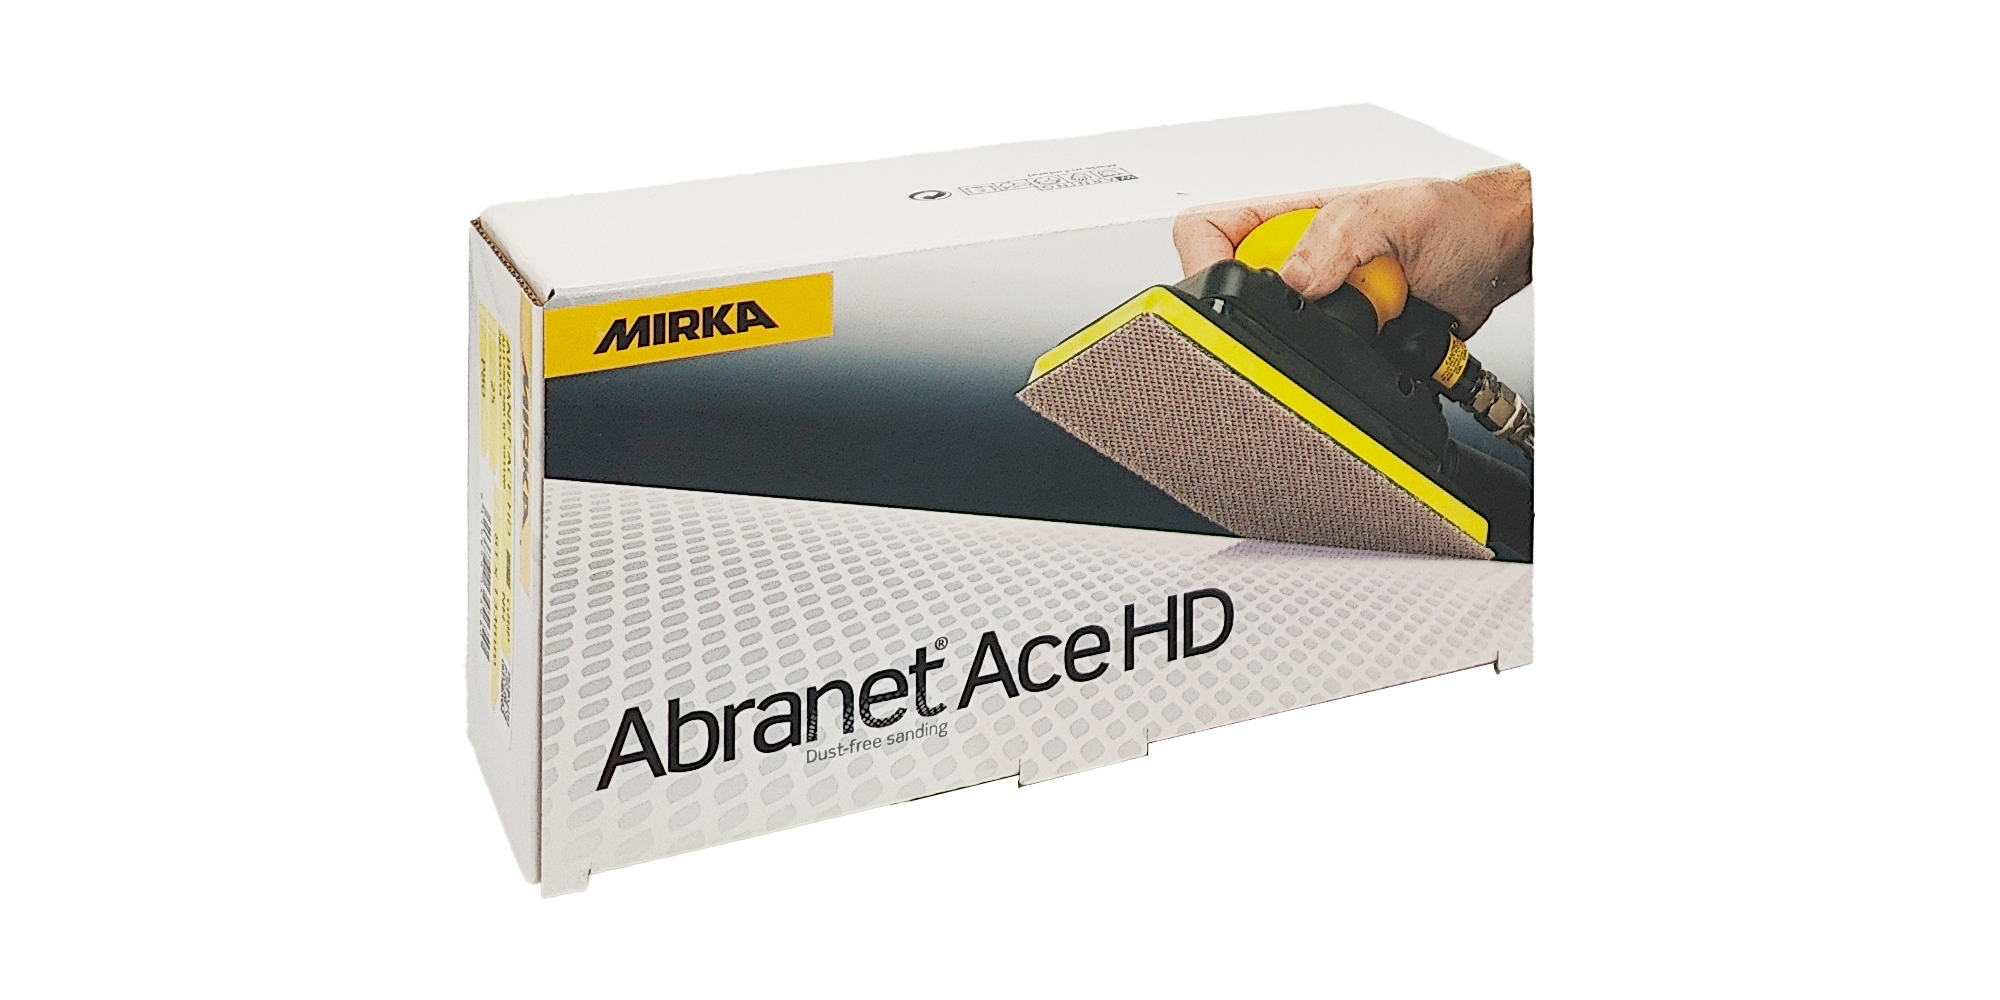 Abbildung Mirka Abranet ACE HD 81x133mm Verpackung.